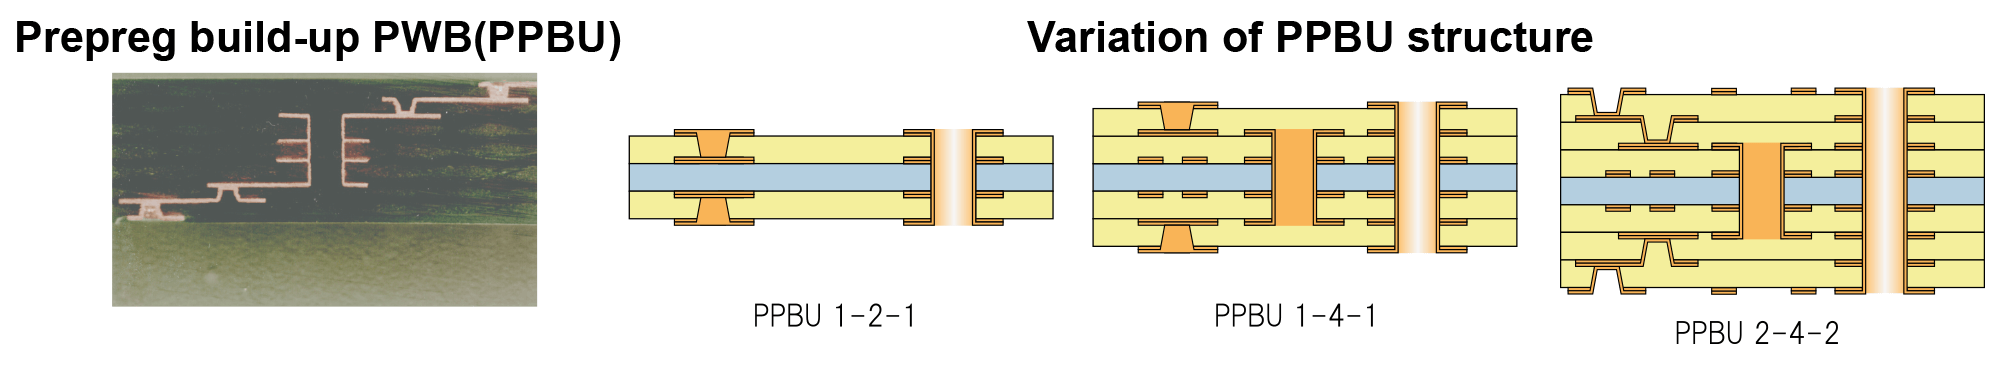 Pregreg build-up PWB(PPBU) Variation of PPBU structure